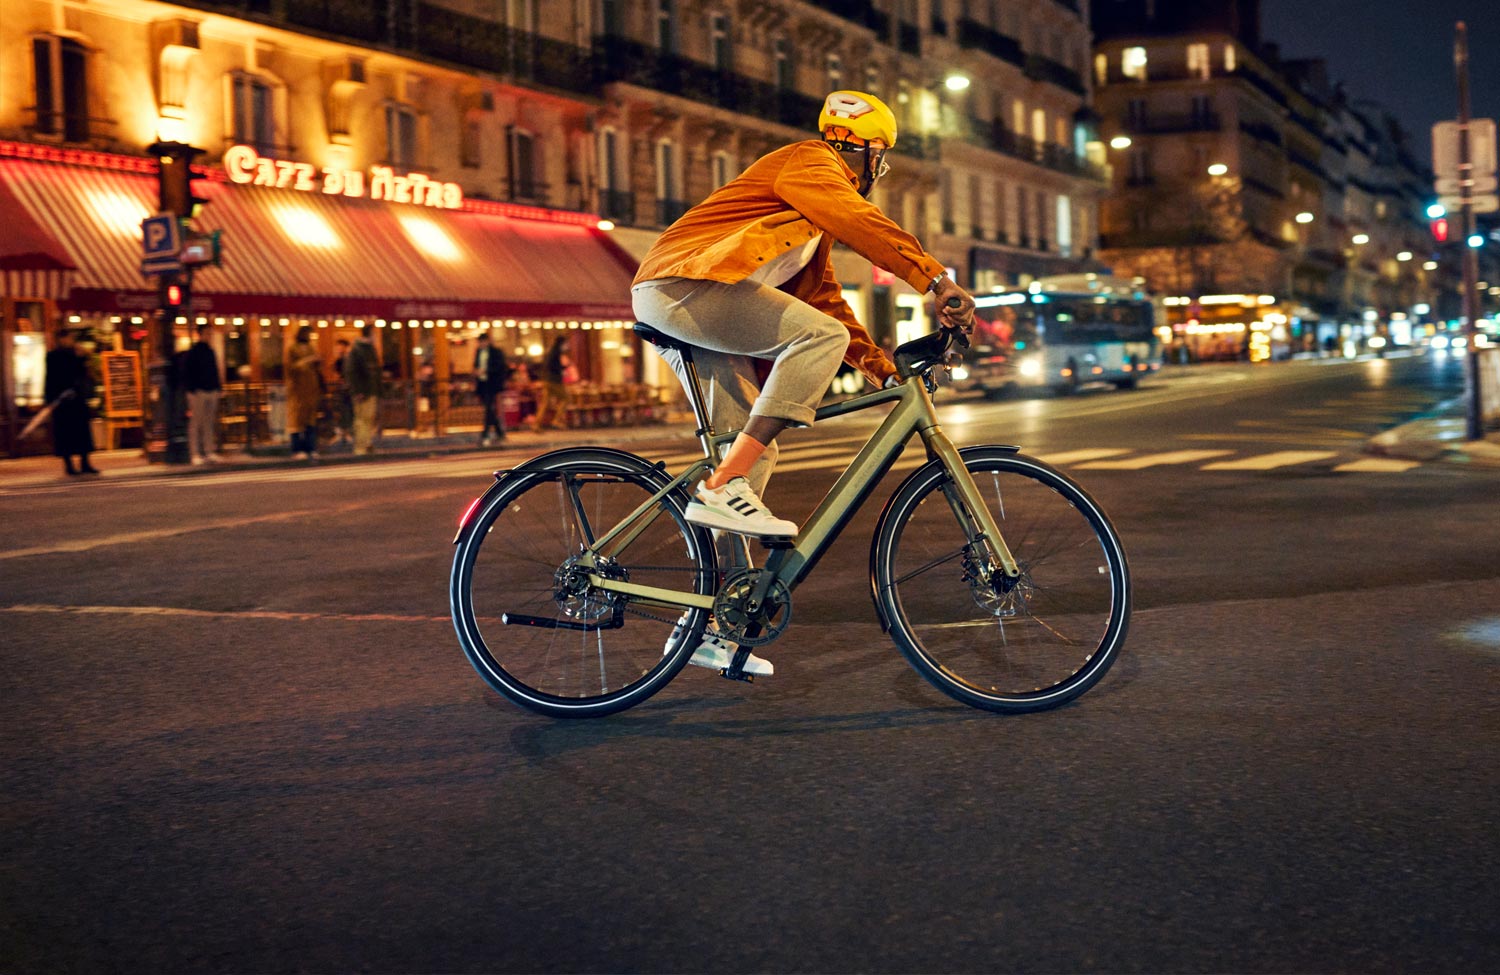 Gazelle fahrrad test - Die qualitativsten Gazelle fahrrad test auf einen Blick!